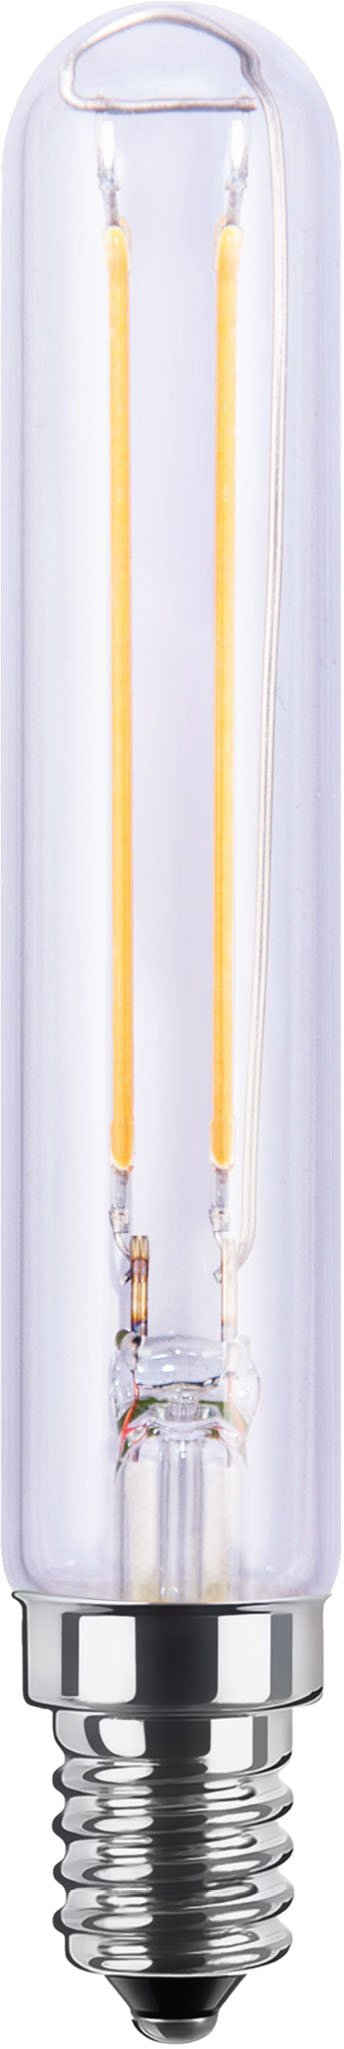 SEGULA LED-Leuchtmittel LED Tube klar, E14, Warmweiß, dimmbar, E27, Tube, klar